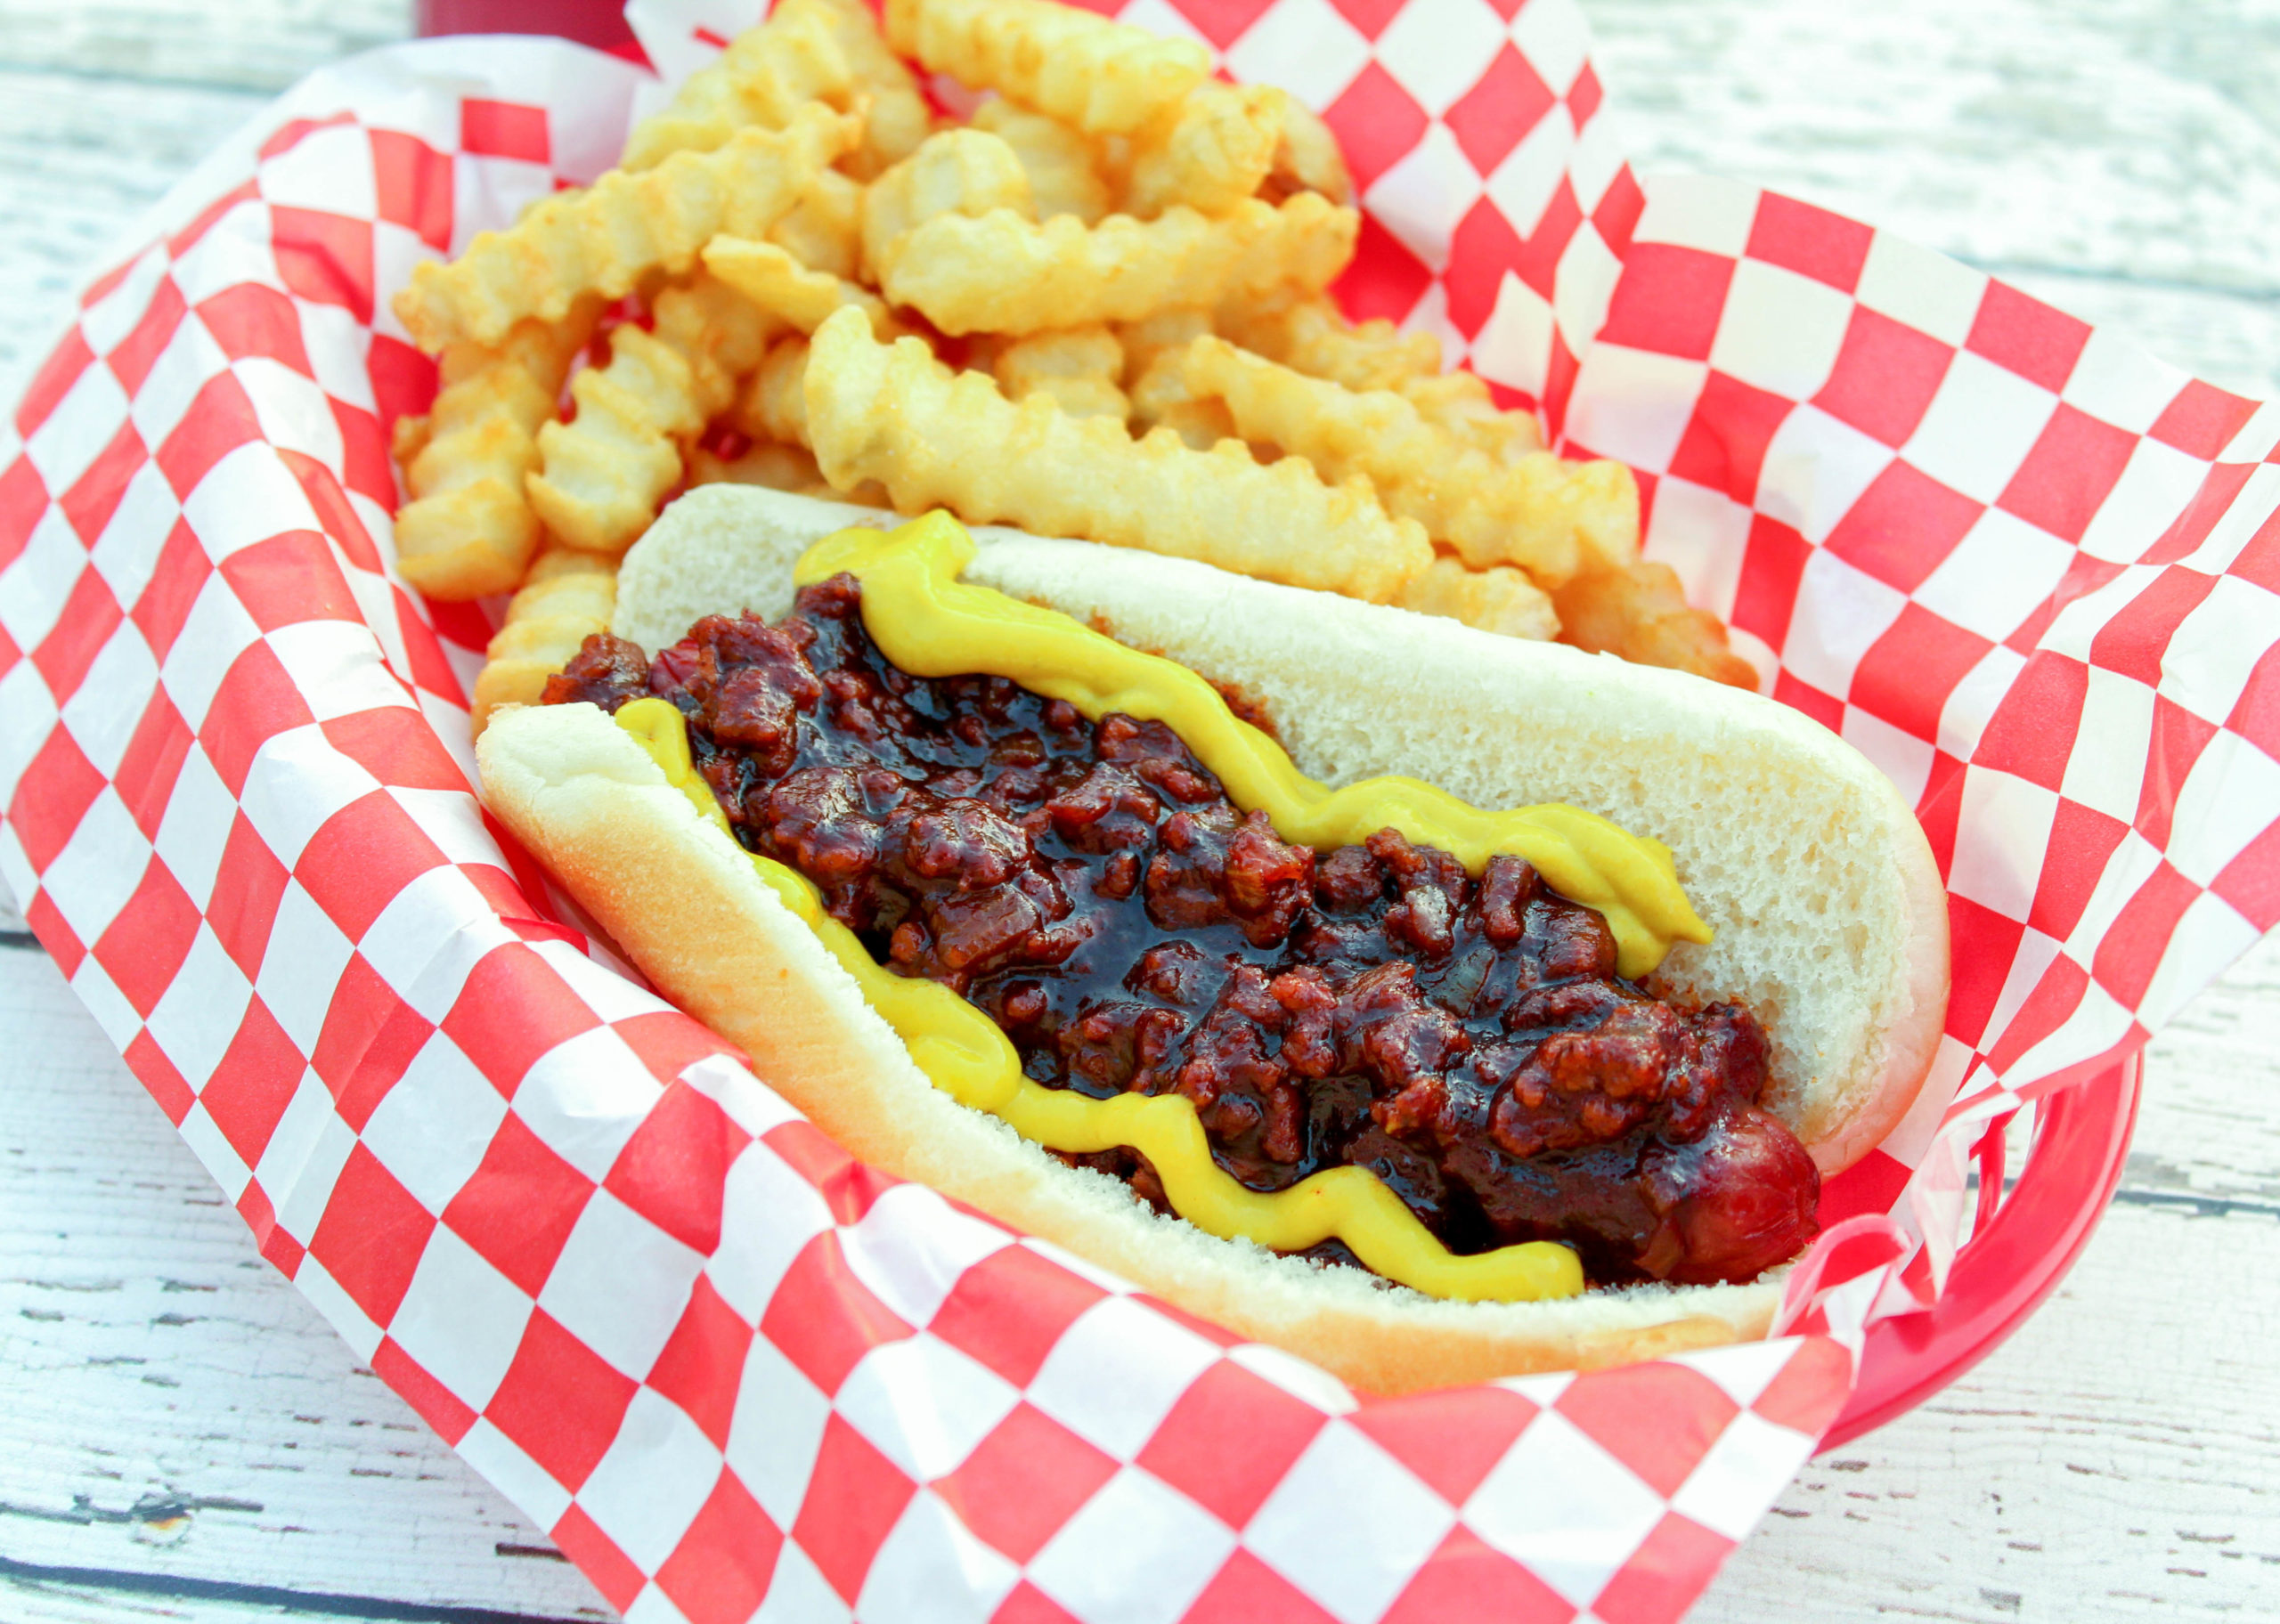 Coney Island Hot Dog Sauce on a hot dog